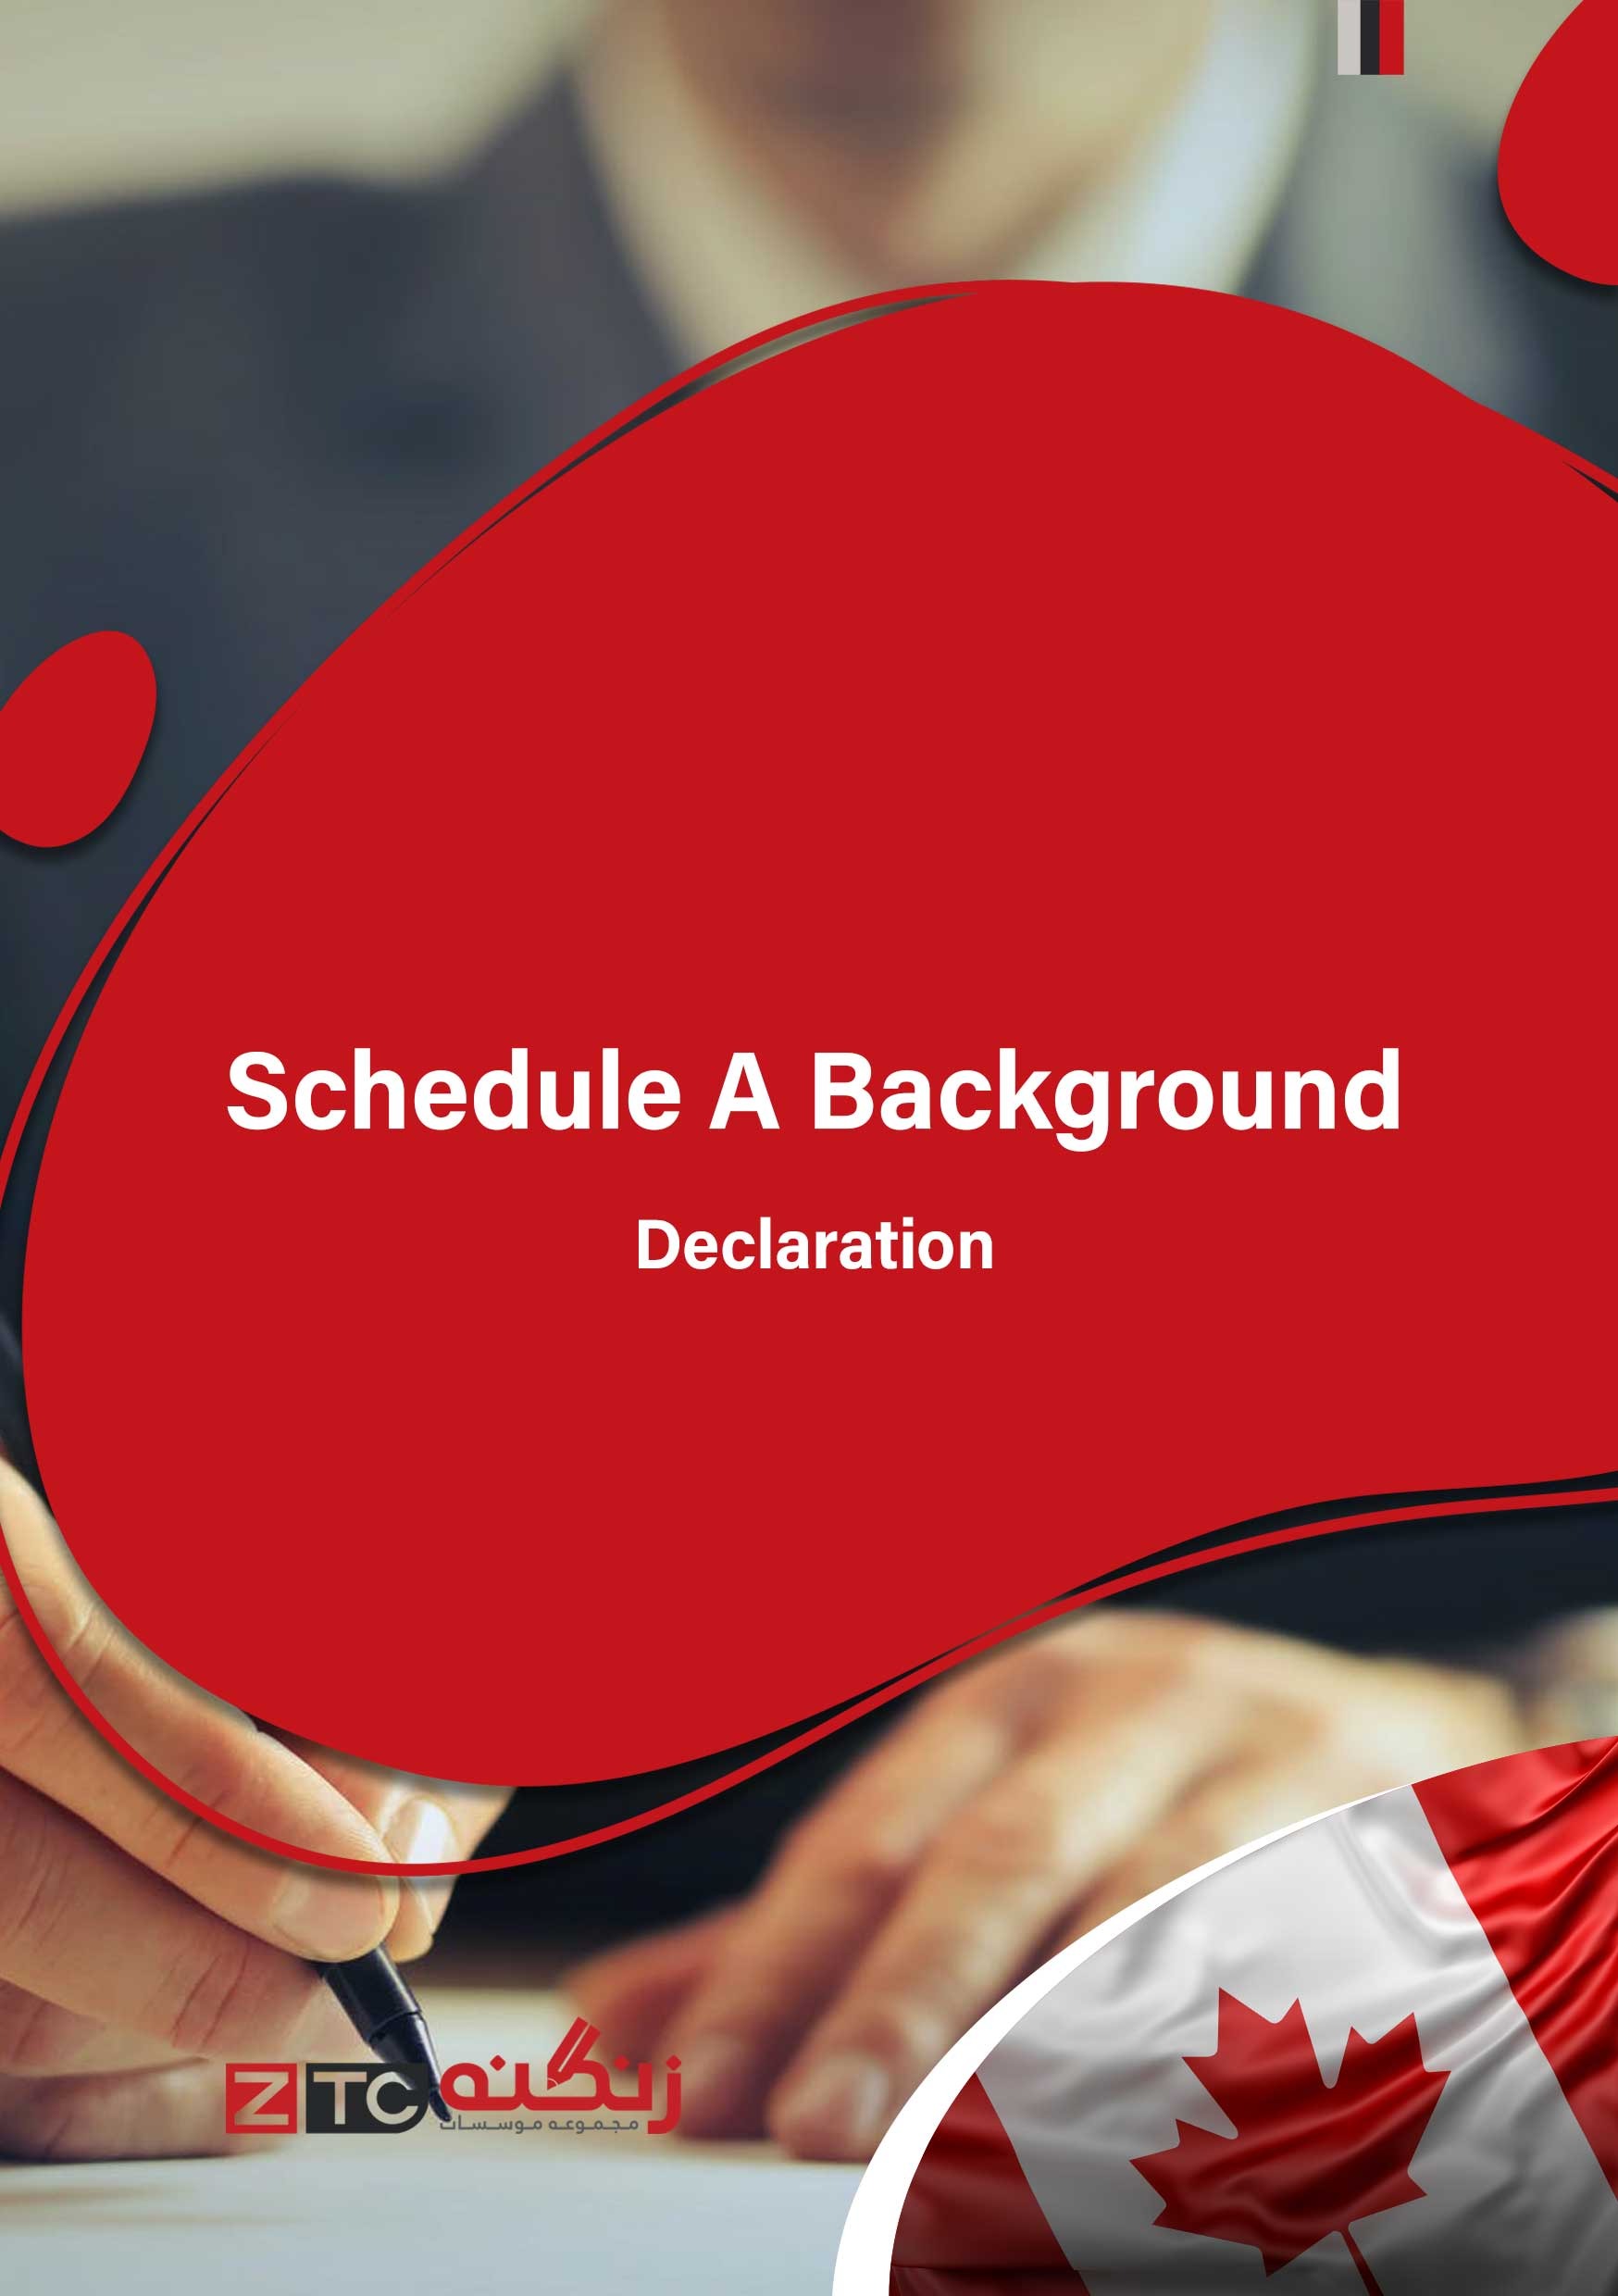 Schedule A Background - Declaration